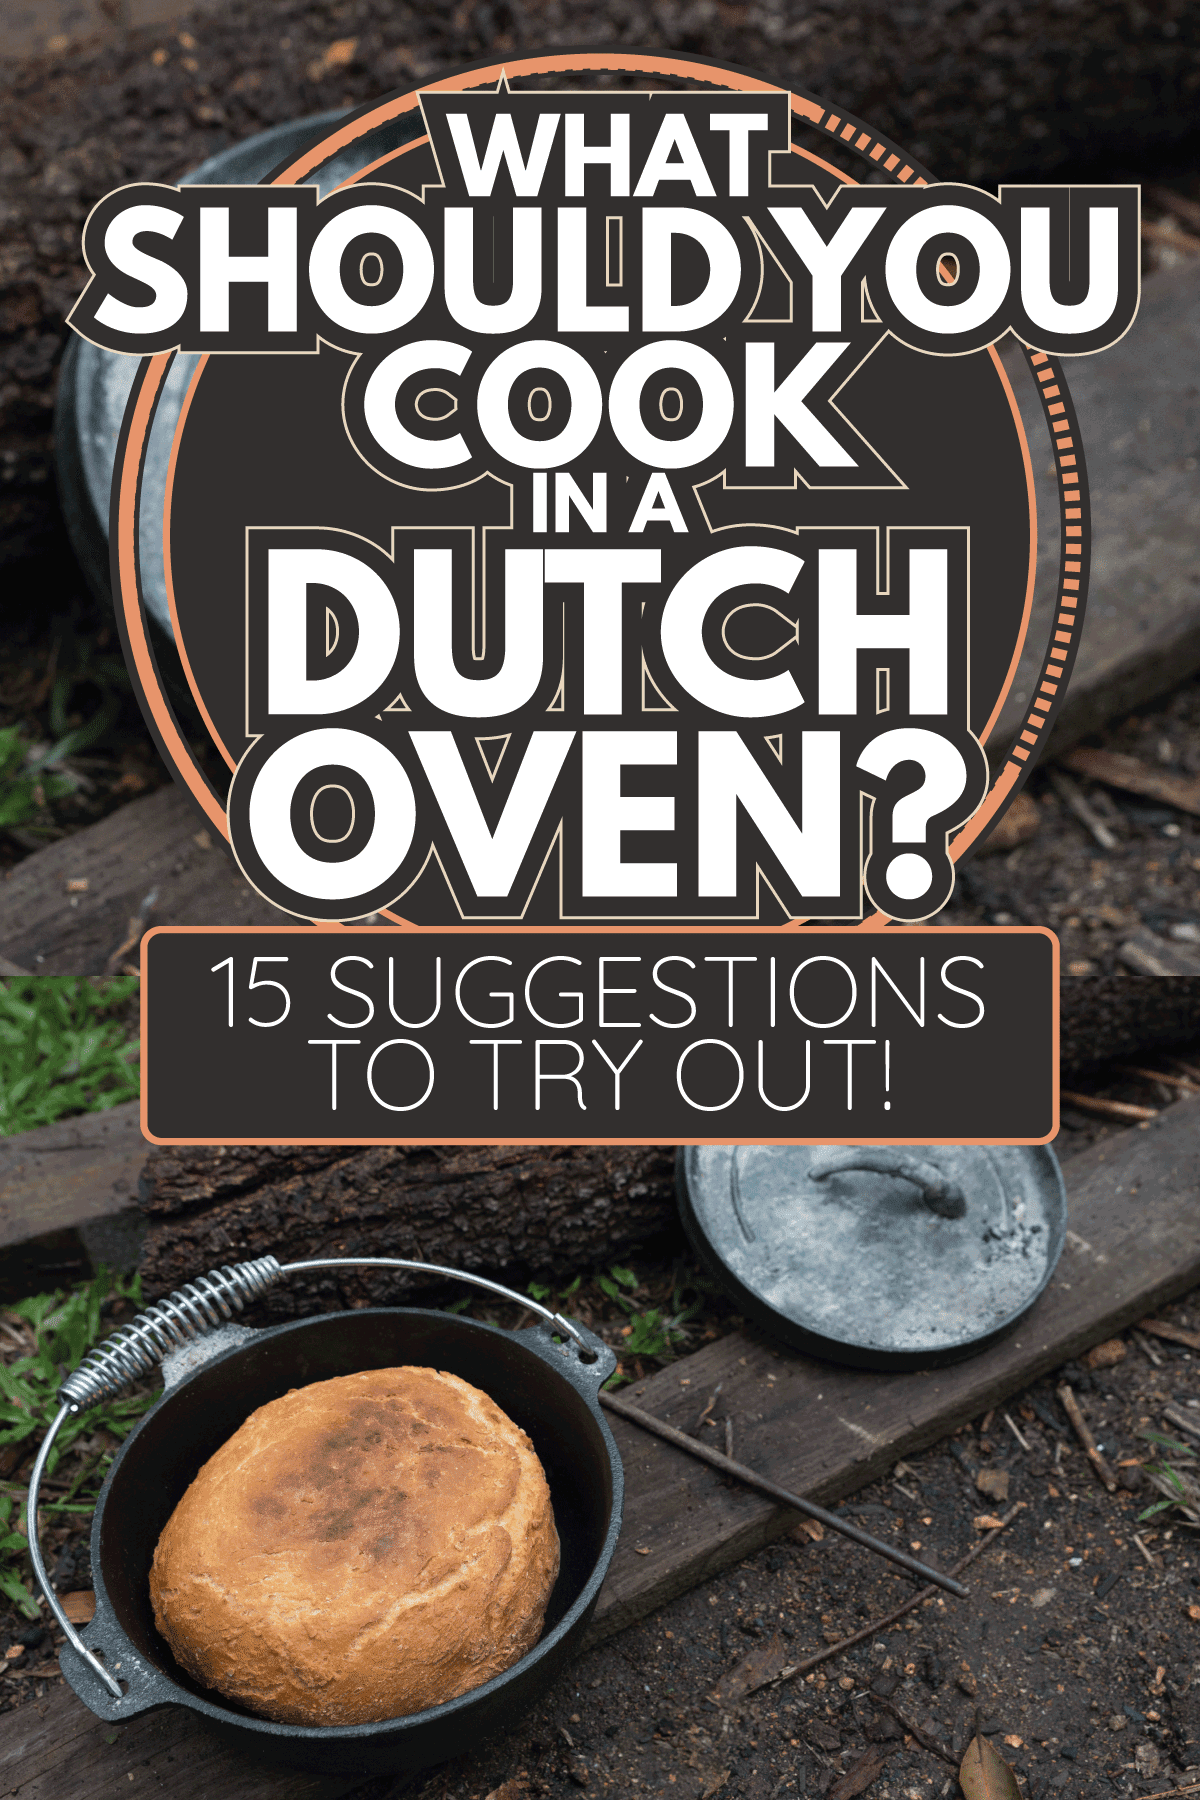 在野营炉里炭火上烤的湿面包。你应该用荷兰烤箱做什么?］